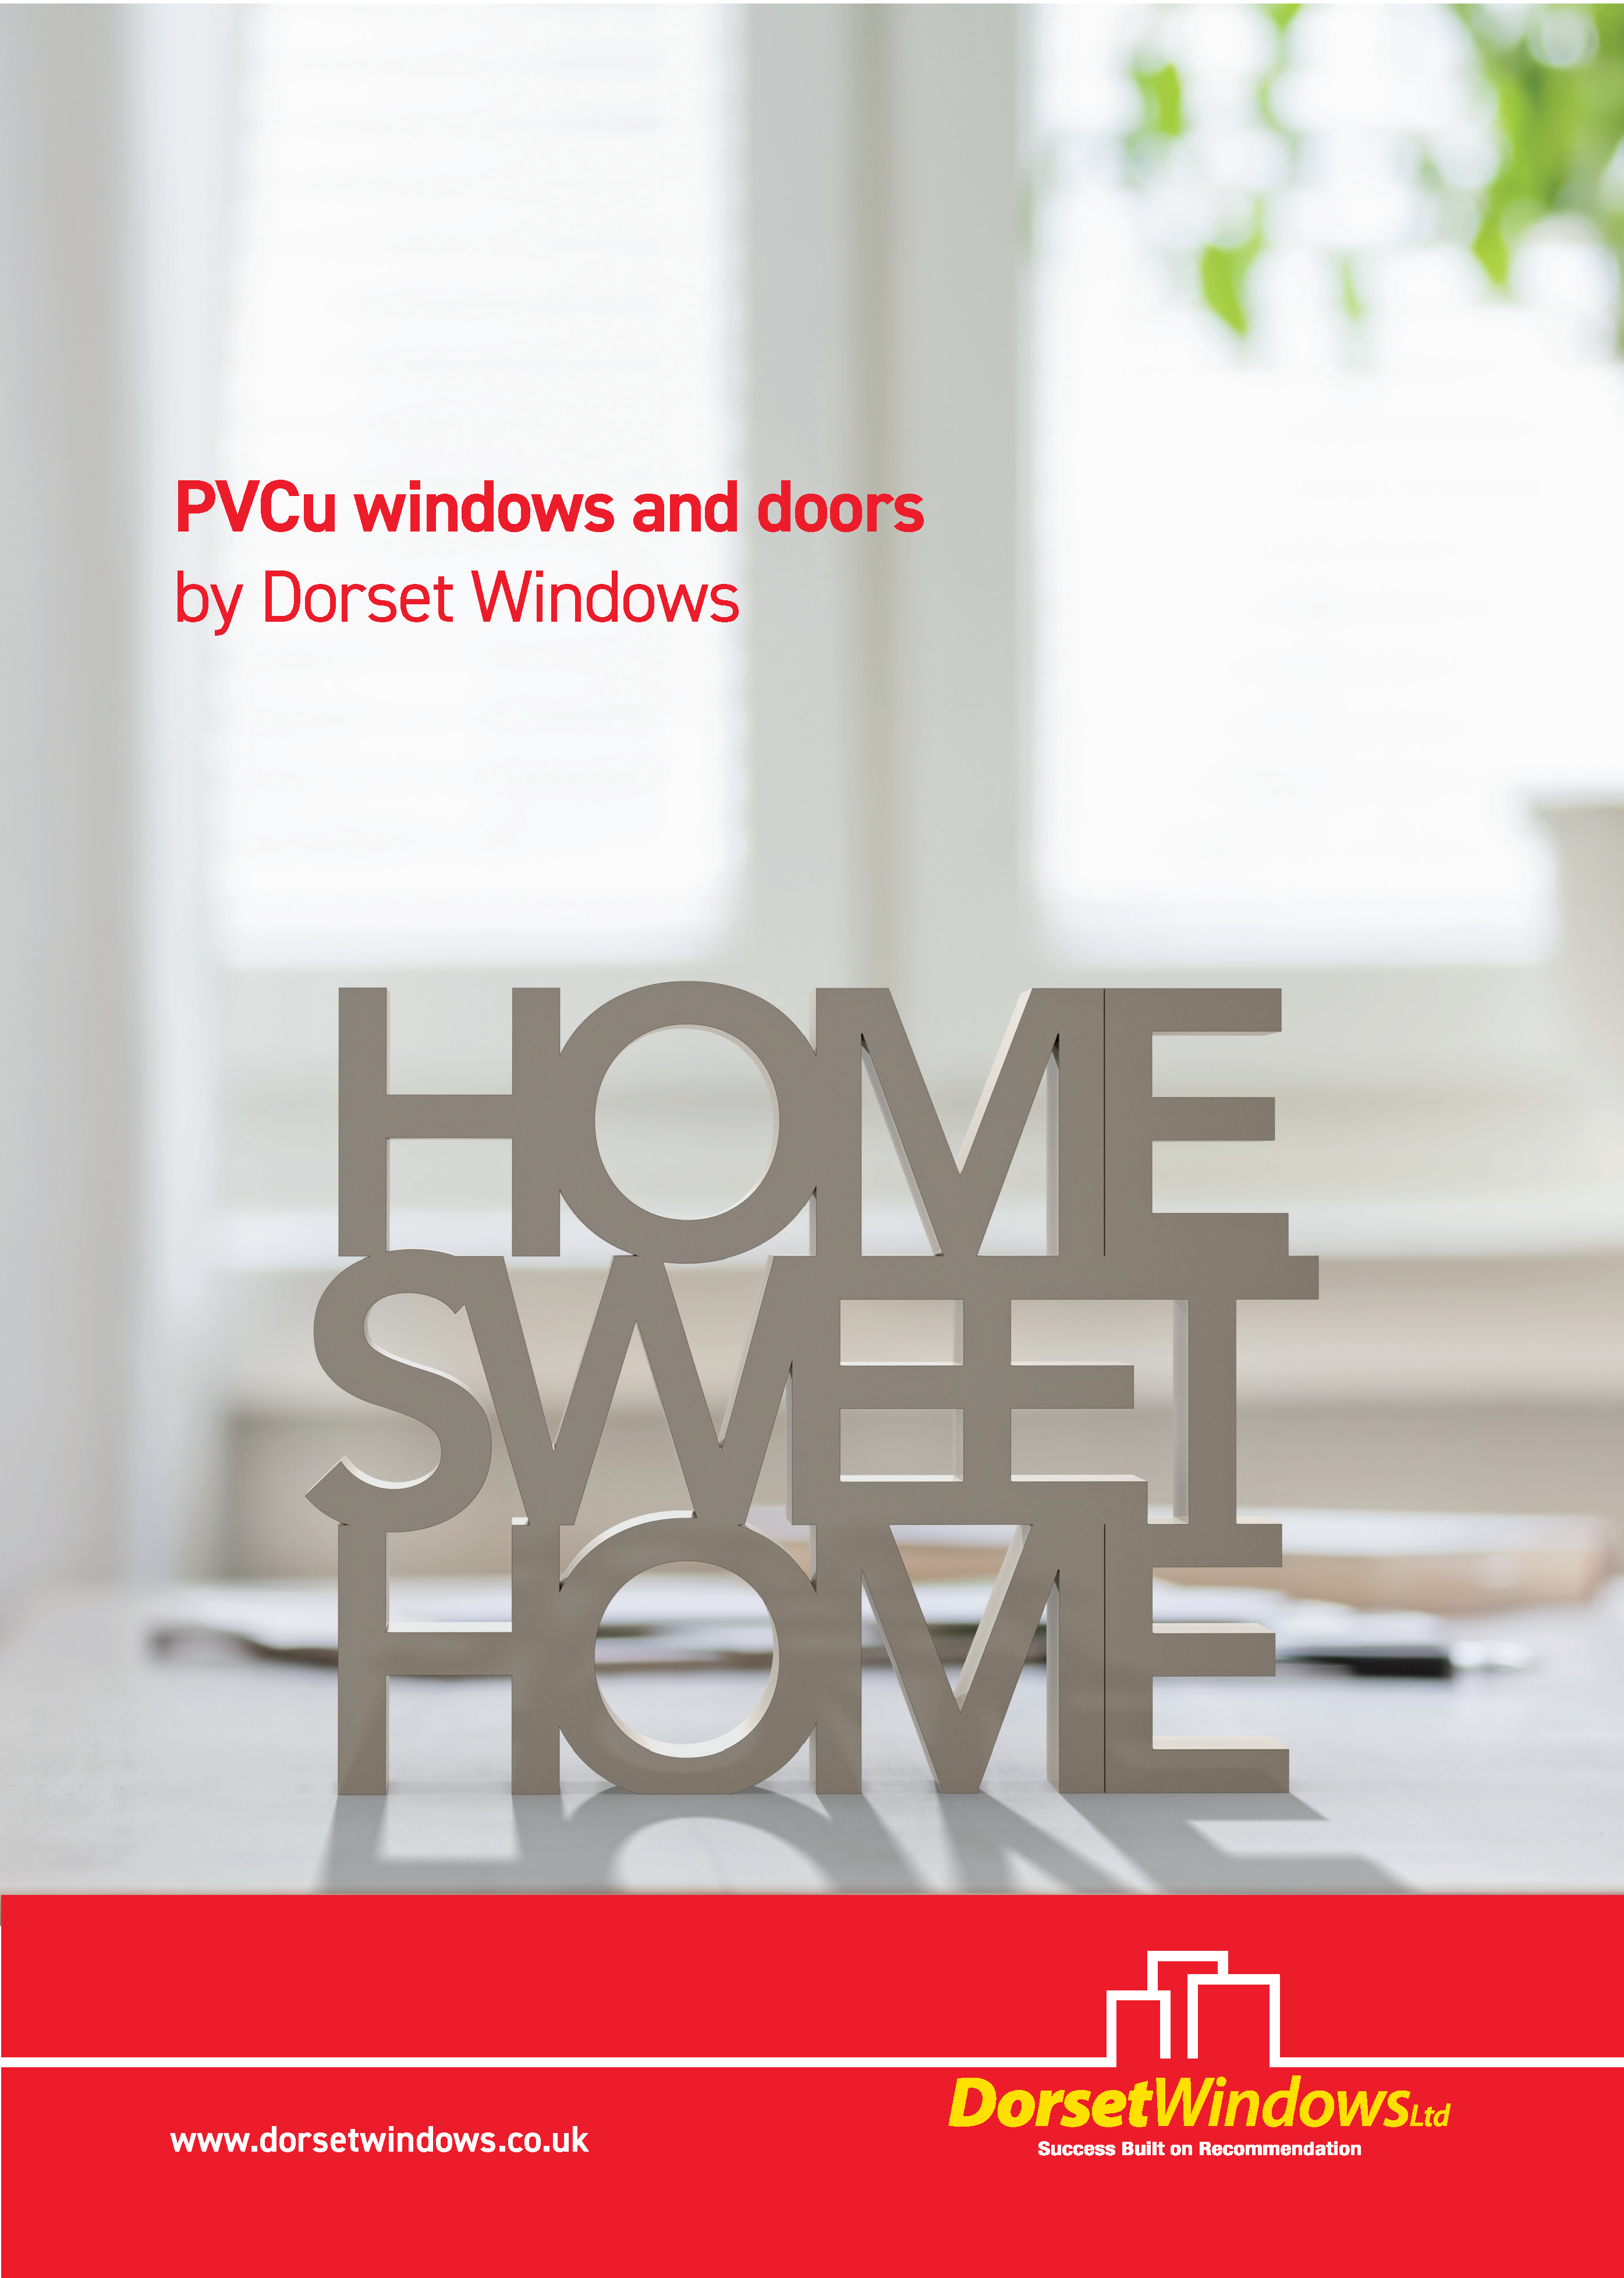 PVCu Windows and doors brochure